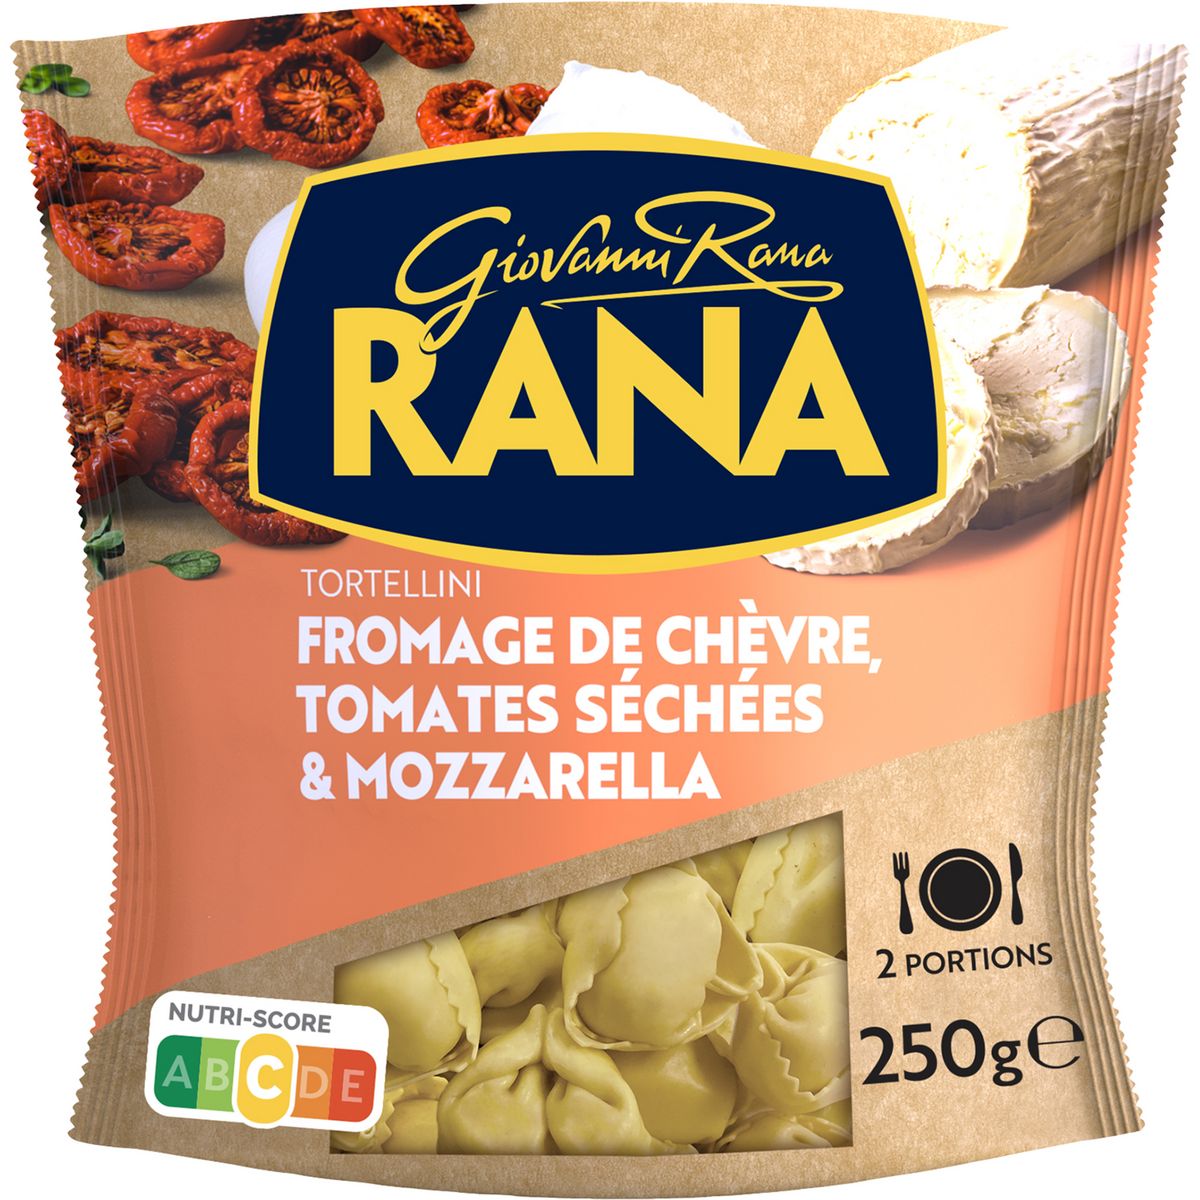 RANA Tortellini fromage de chèvre, tomates séchées & mozzarella 2 portions 250g